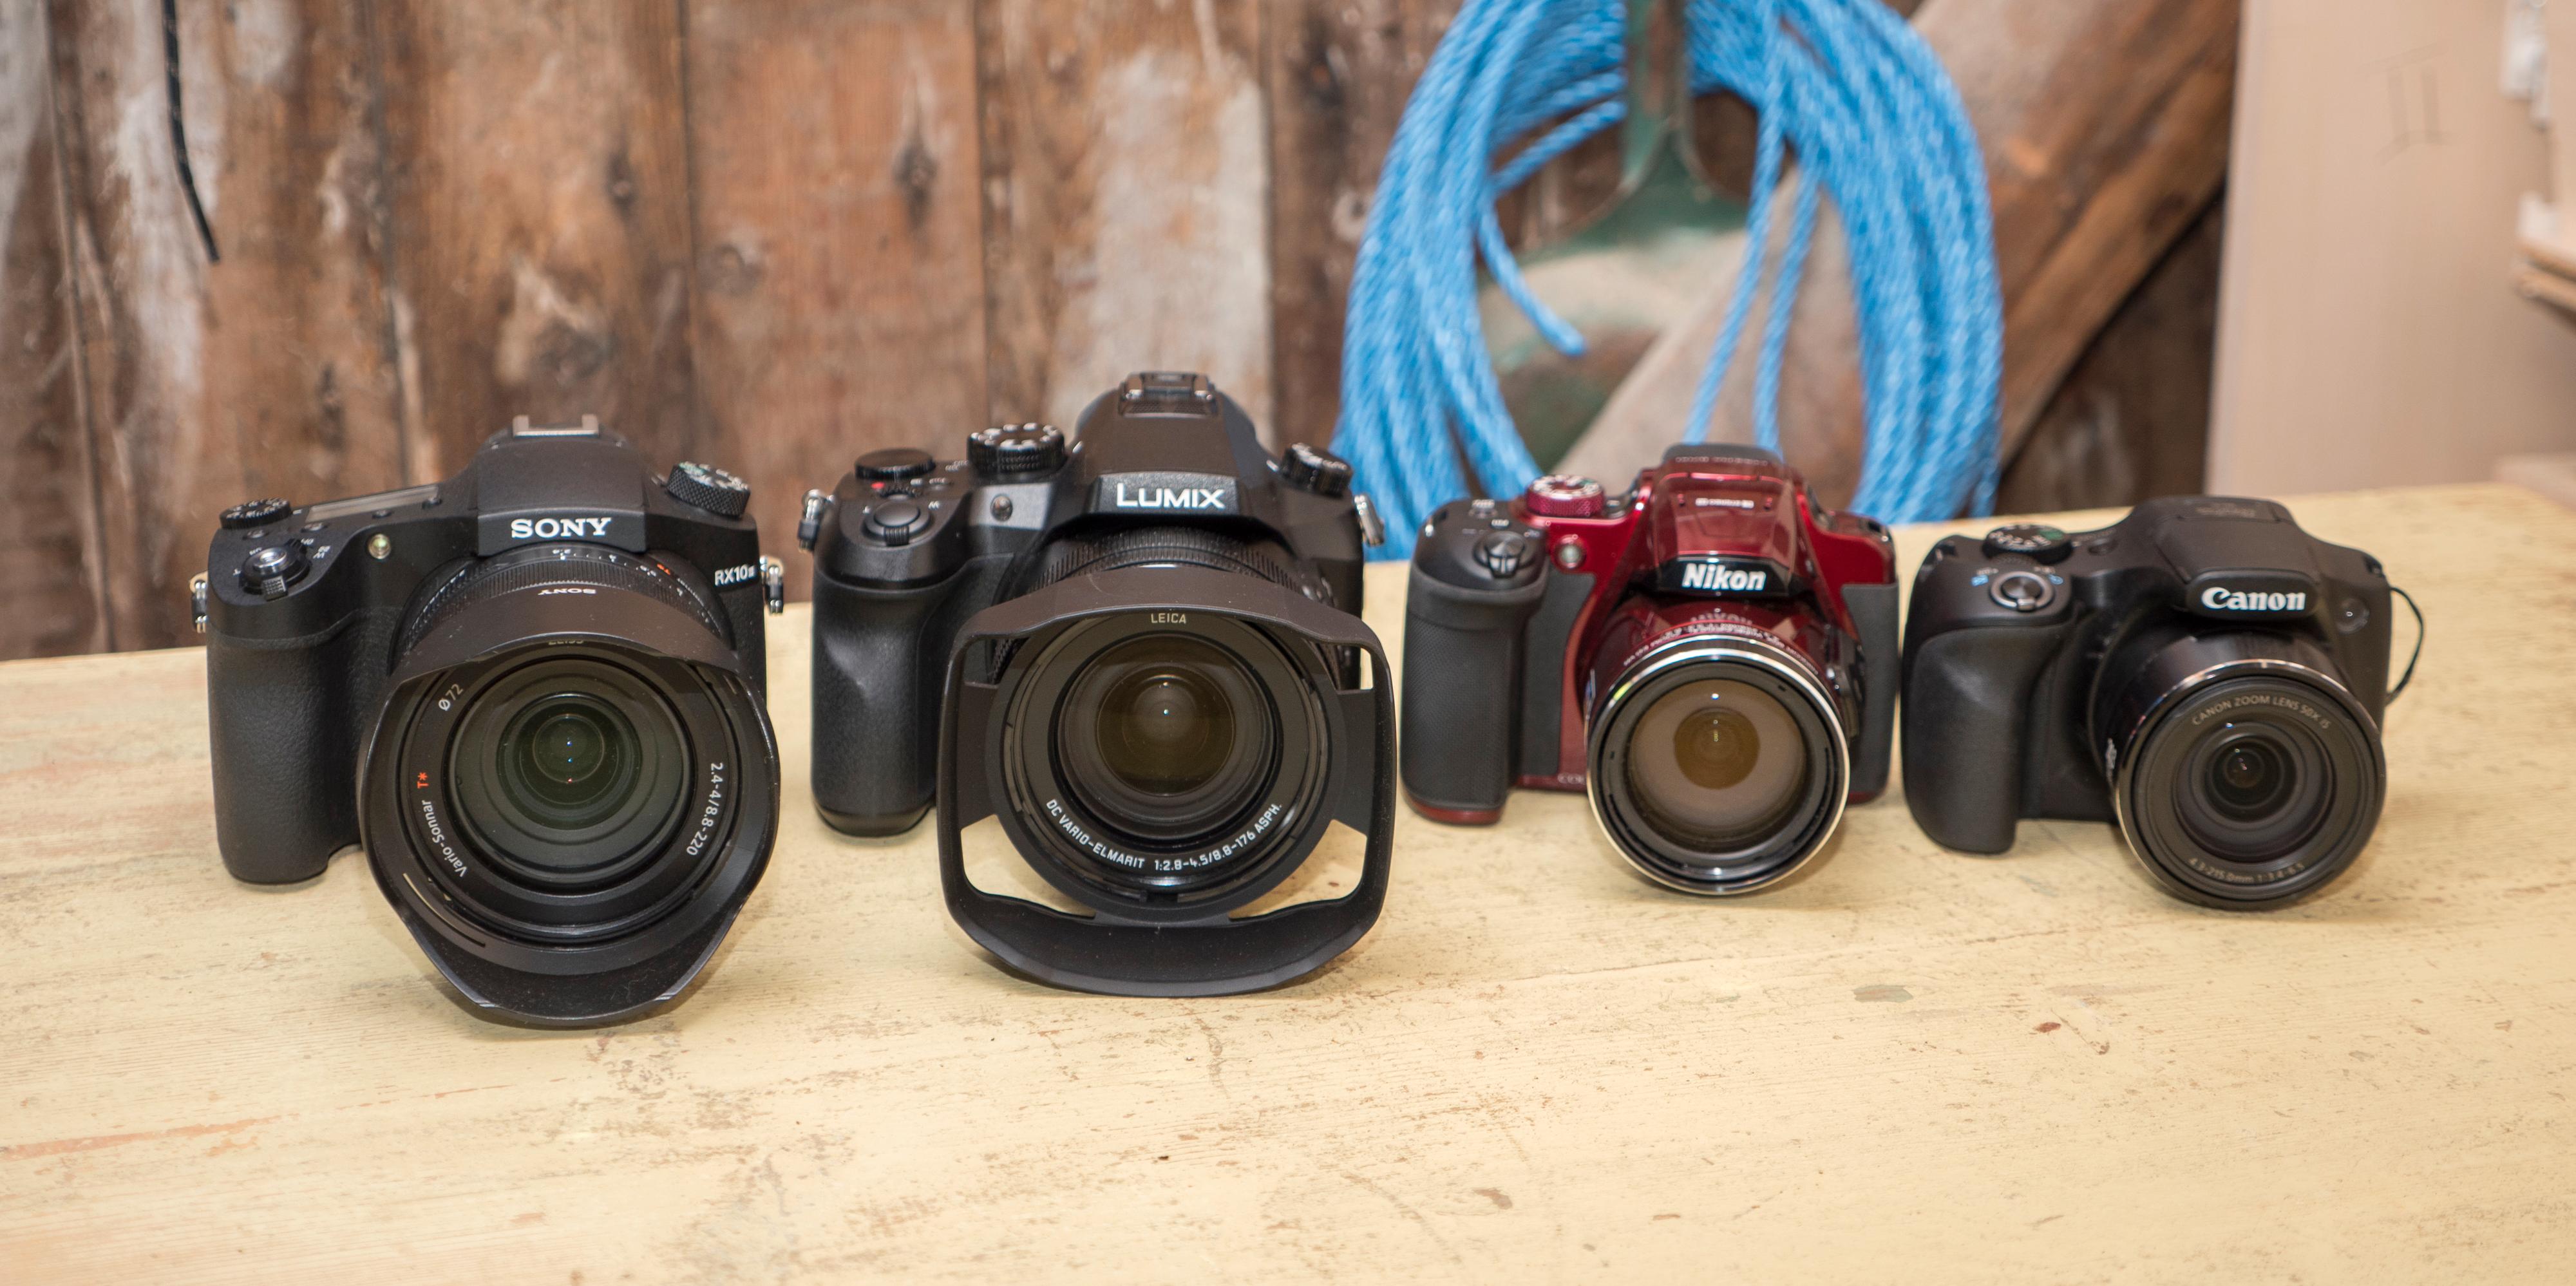 Fra venstre, hvis du ikke ser det på bildet: Sony, Panasonic, Nikon og Canon.